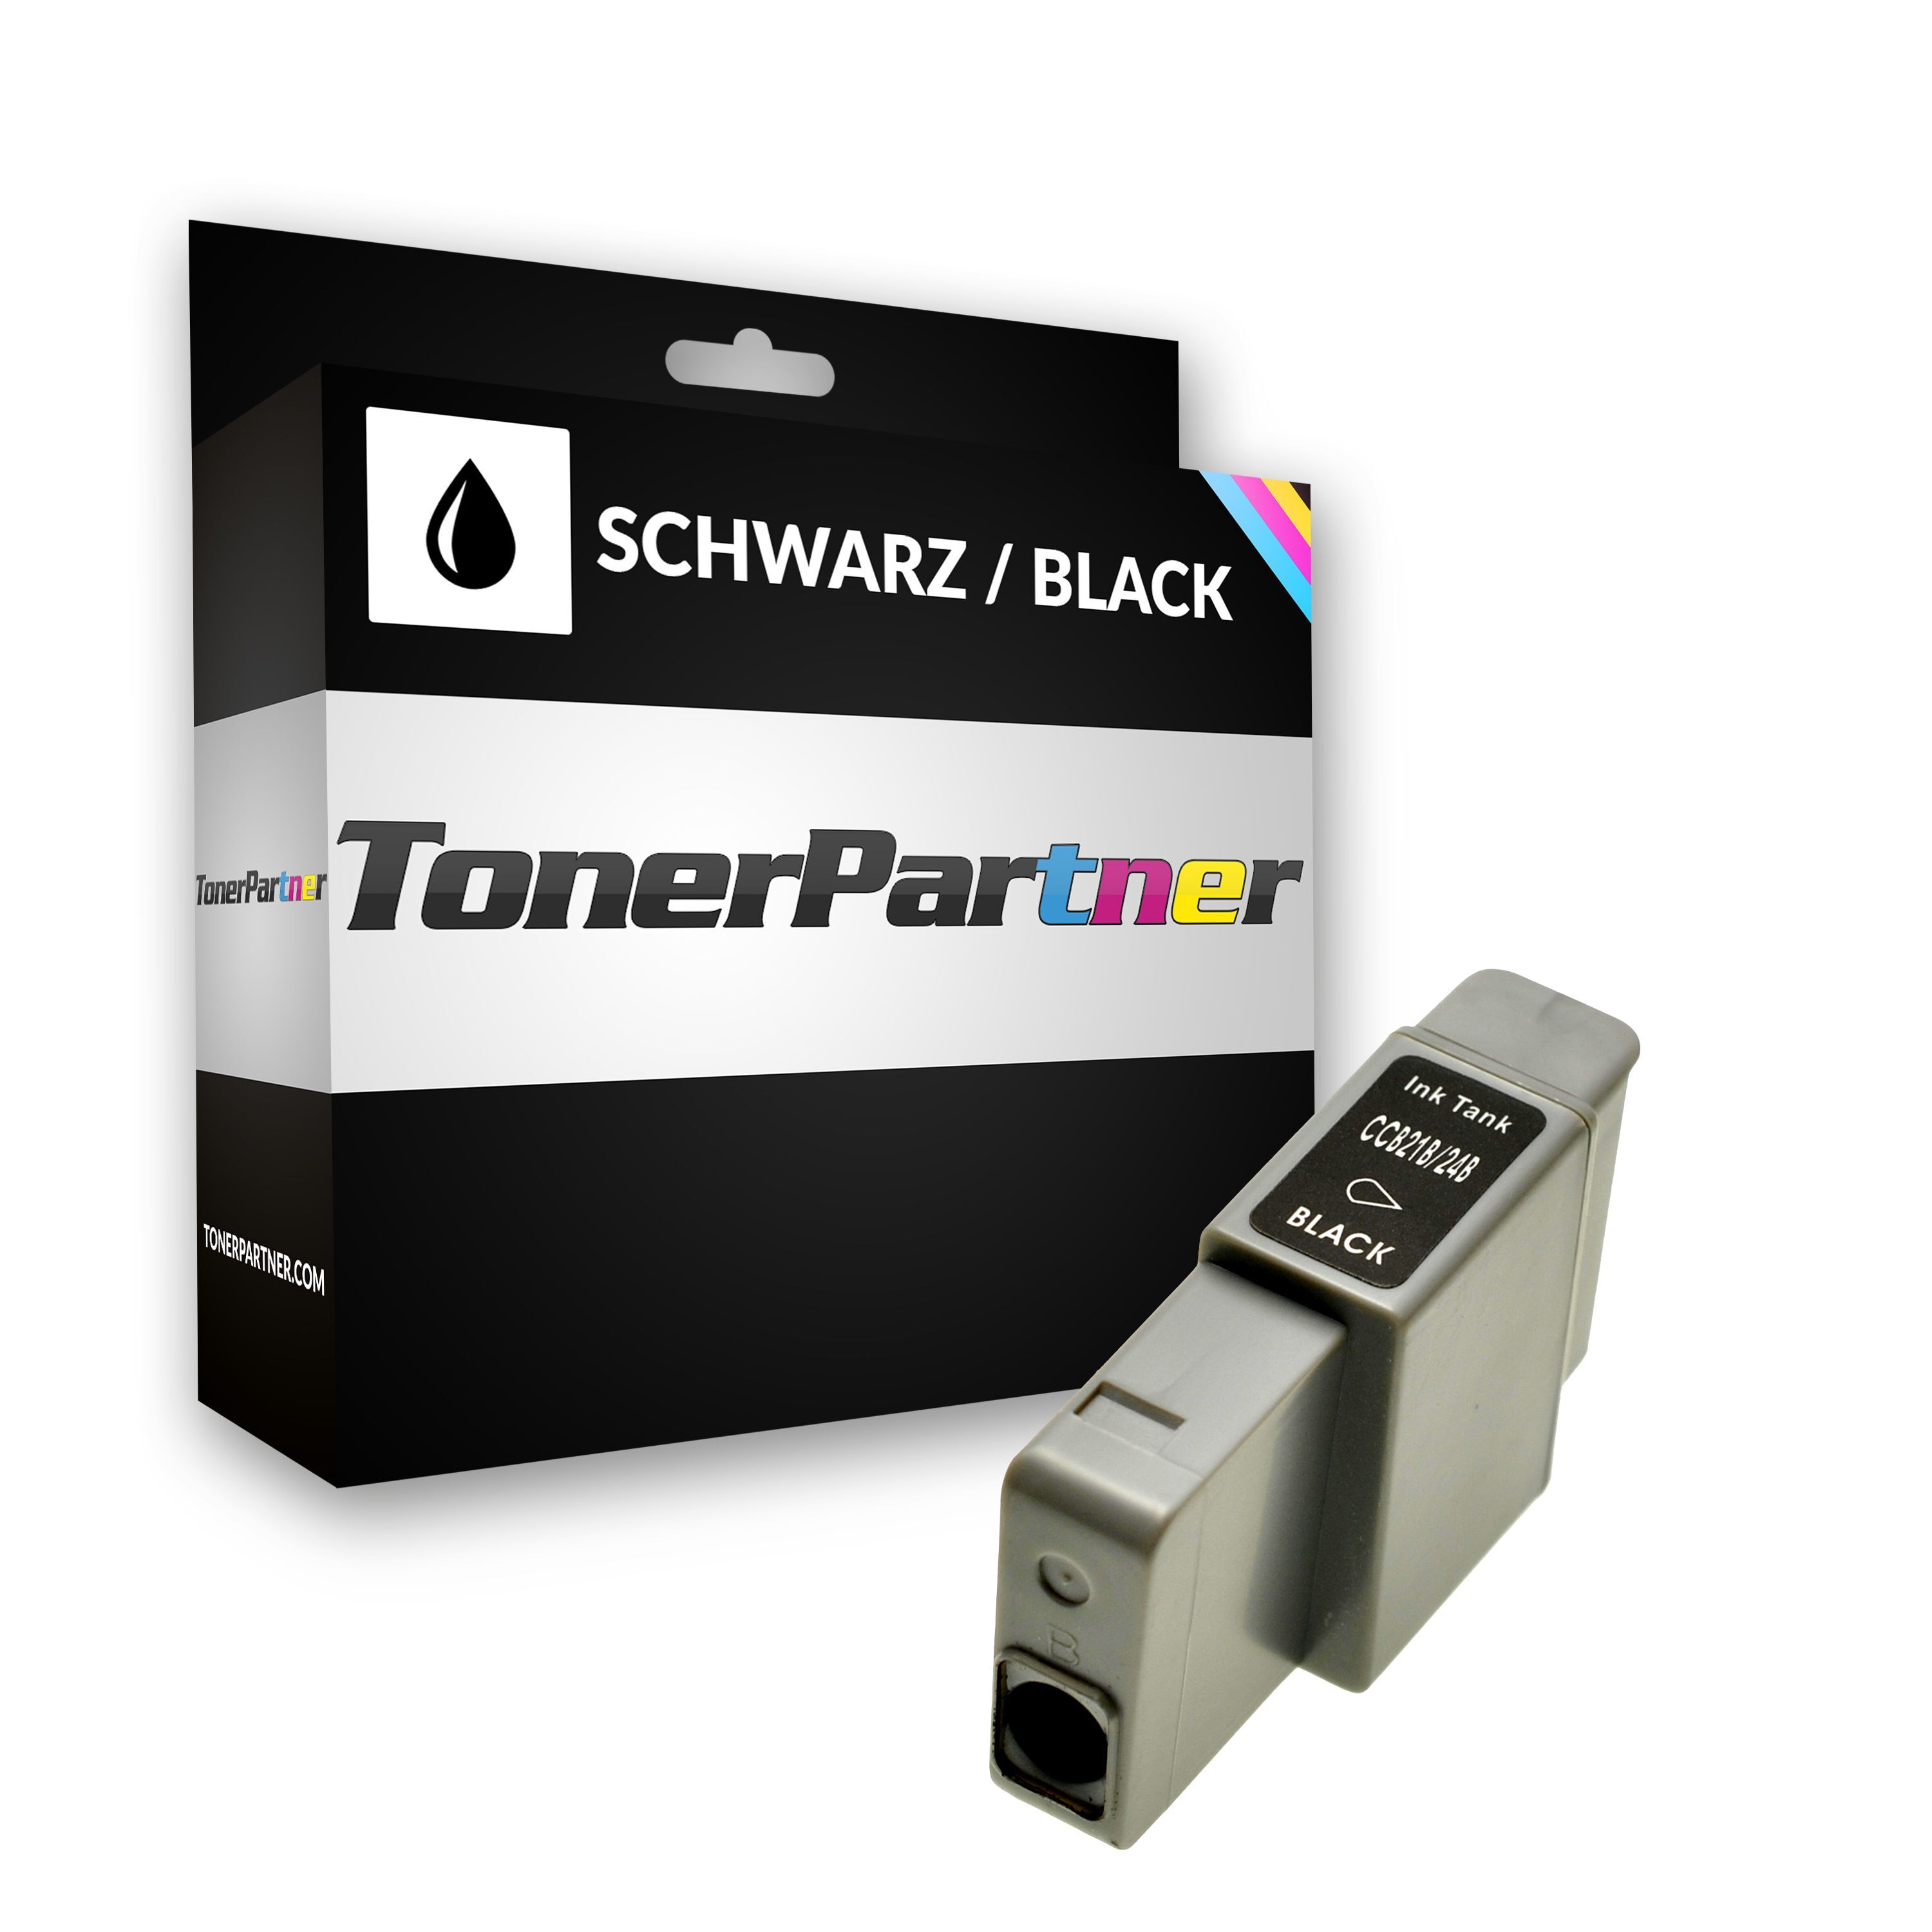 TonerPartner Kompatibel zu Canon S 330 Photo Tintenpatrone (BCI-24 BK / 6881 A 002) schwarz, 240 Seiten, 1,44 Rp pro Seite, Inhalt: 9 ml von TonerPartner